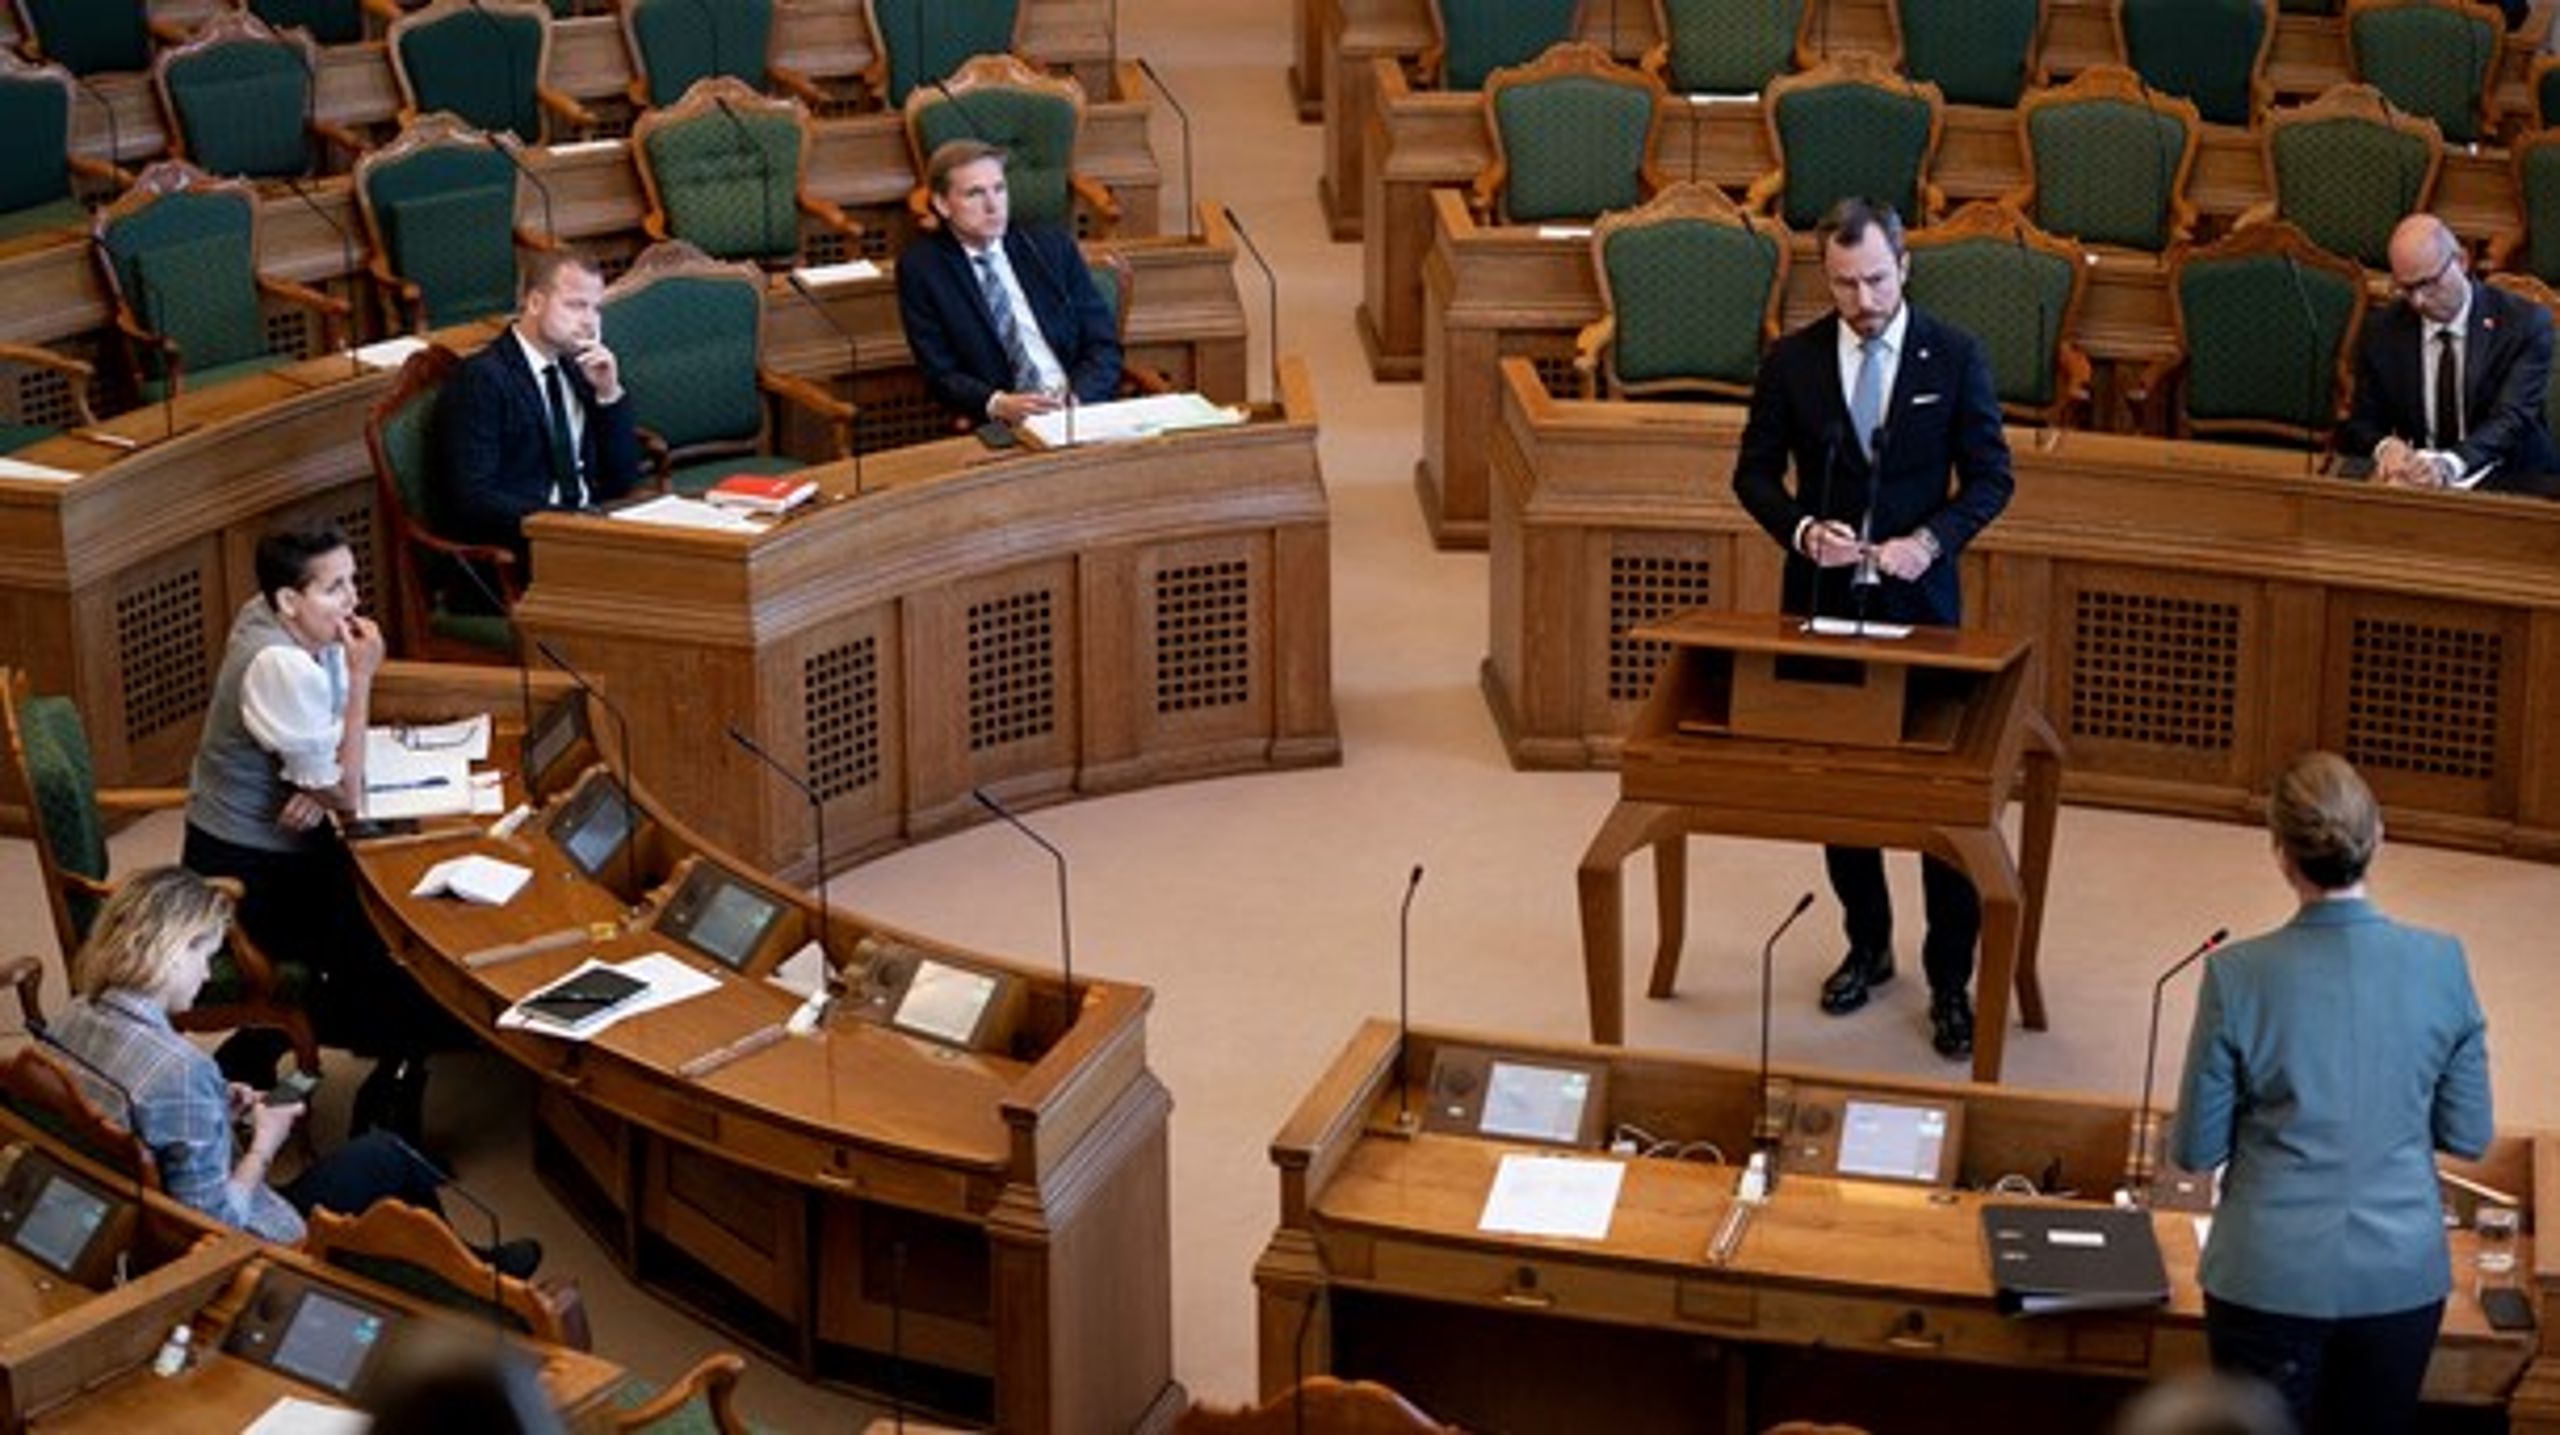 Venstres leder, Jakob Ellemann-Jensen, udfordrede endnu en gang S-leder Mette Frederiksen i spørgetimen. Han er ved at komme efter det, men der mangler stadig de sidste procents skarphed.